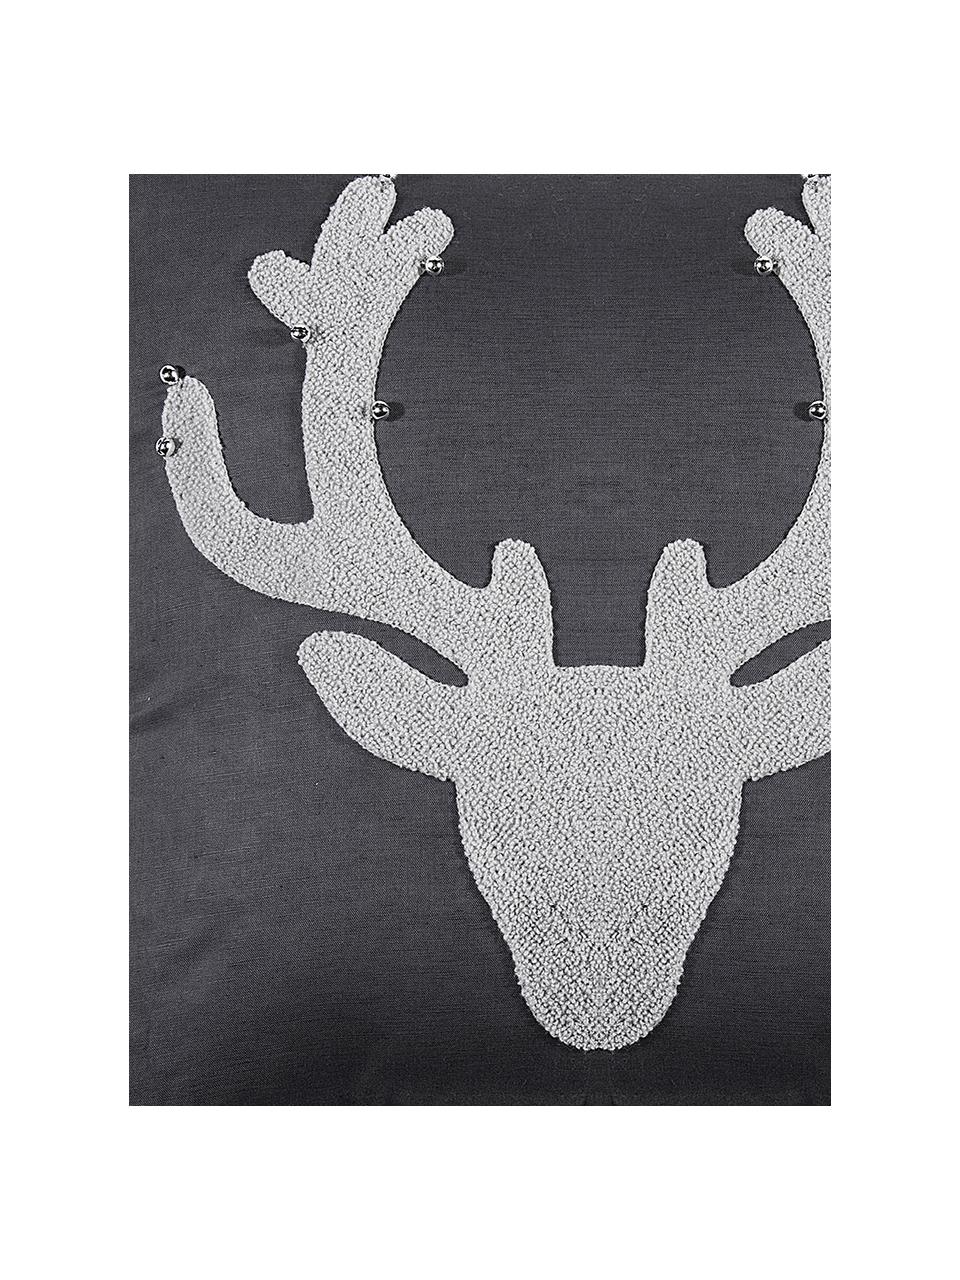 Povlak na polštář s motivem jelena a malými zvonky Bell's, Antracitová, světle šedá